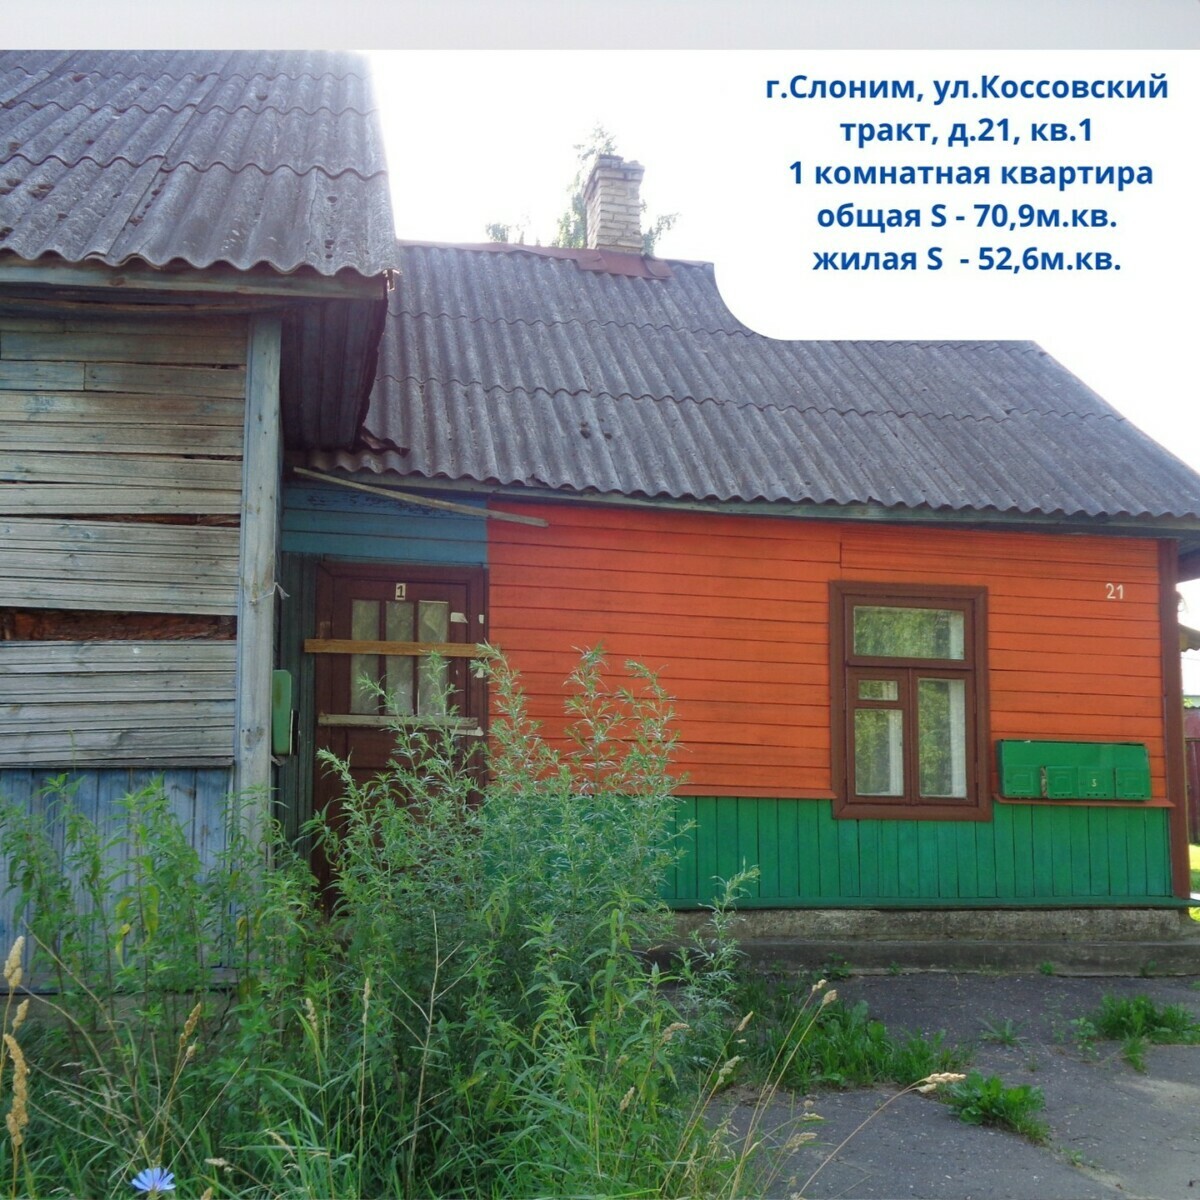 Где в Беларуси можно купить квартиру за одну базовую? Есть целых 6 вариантов